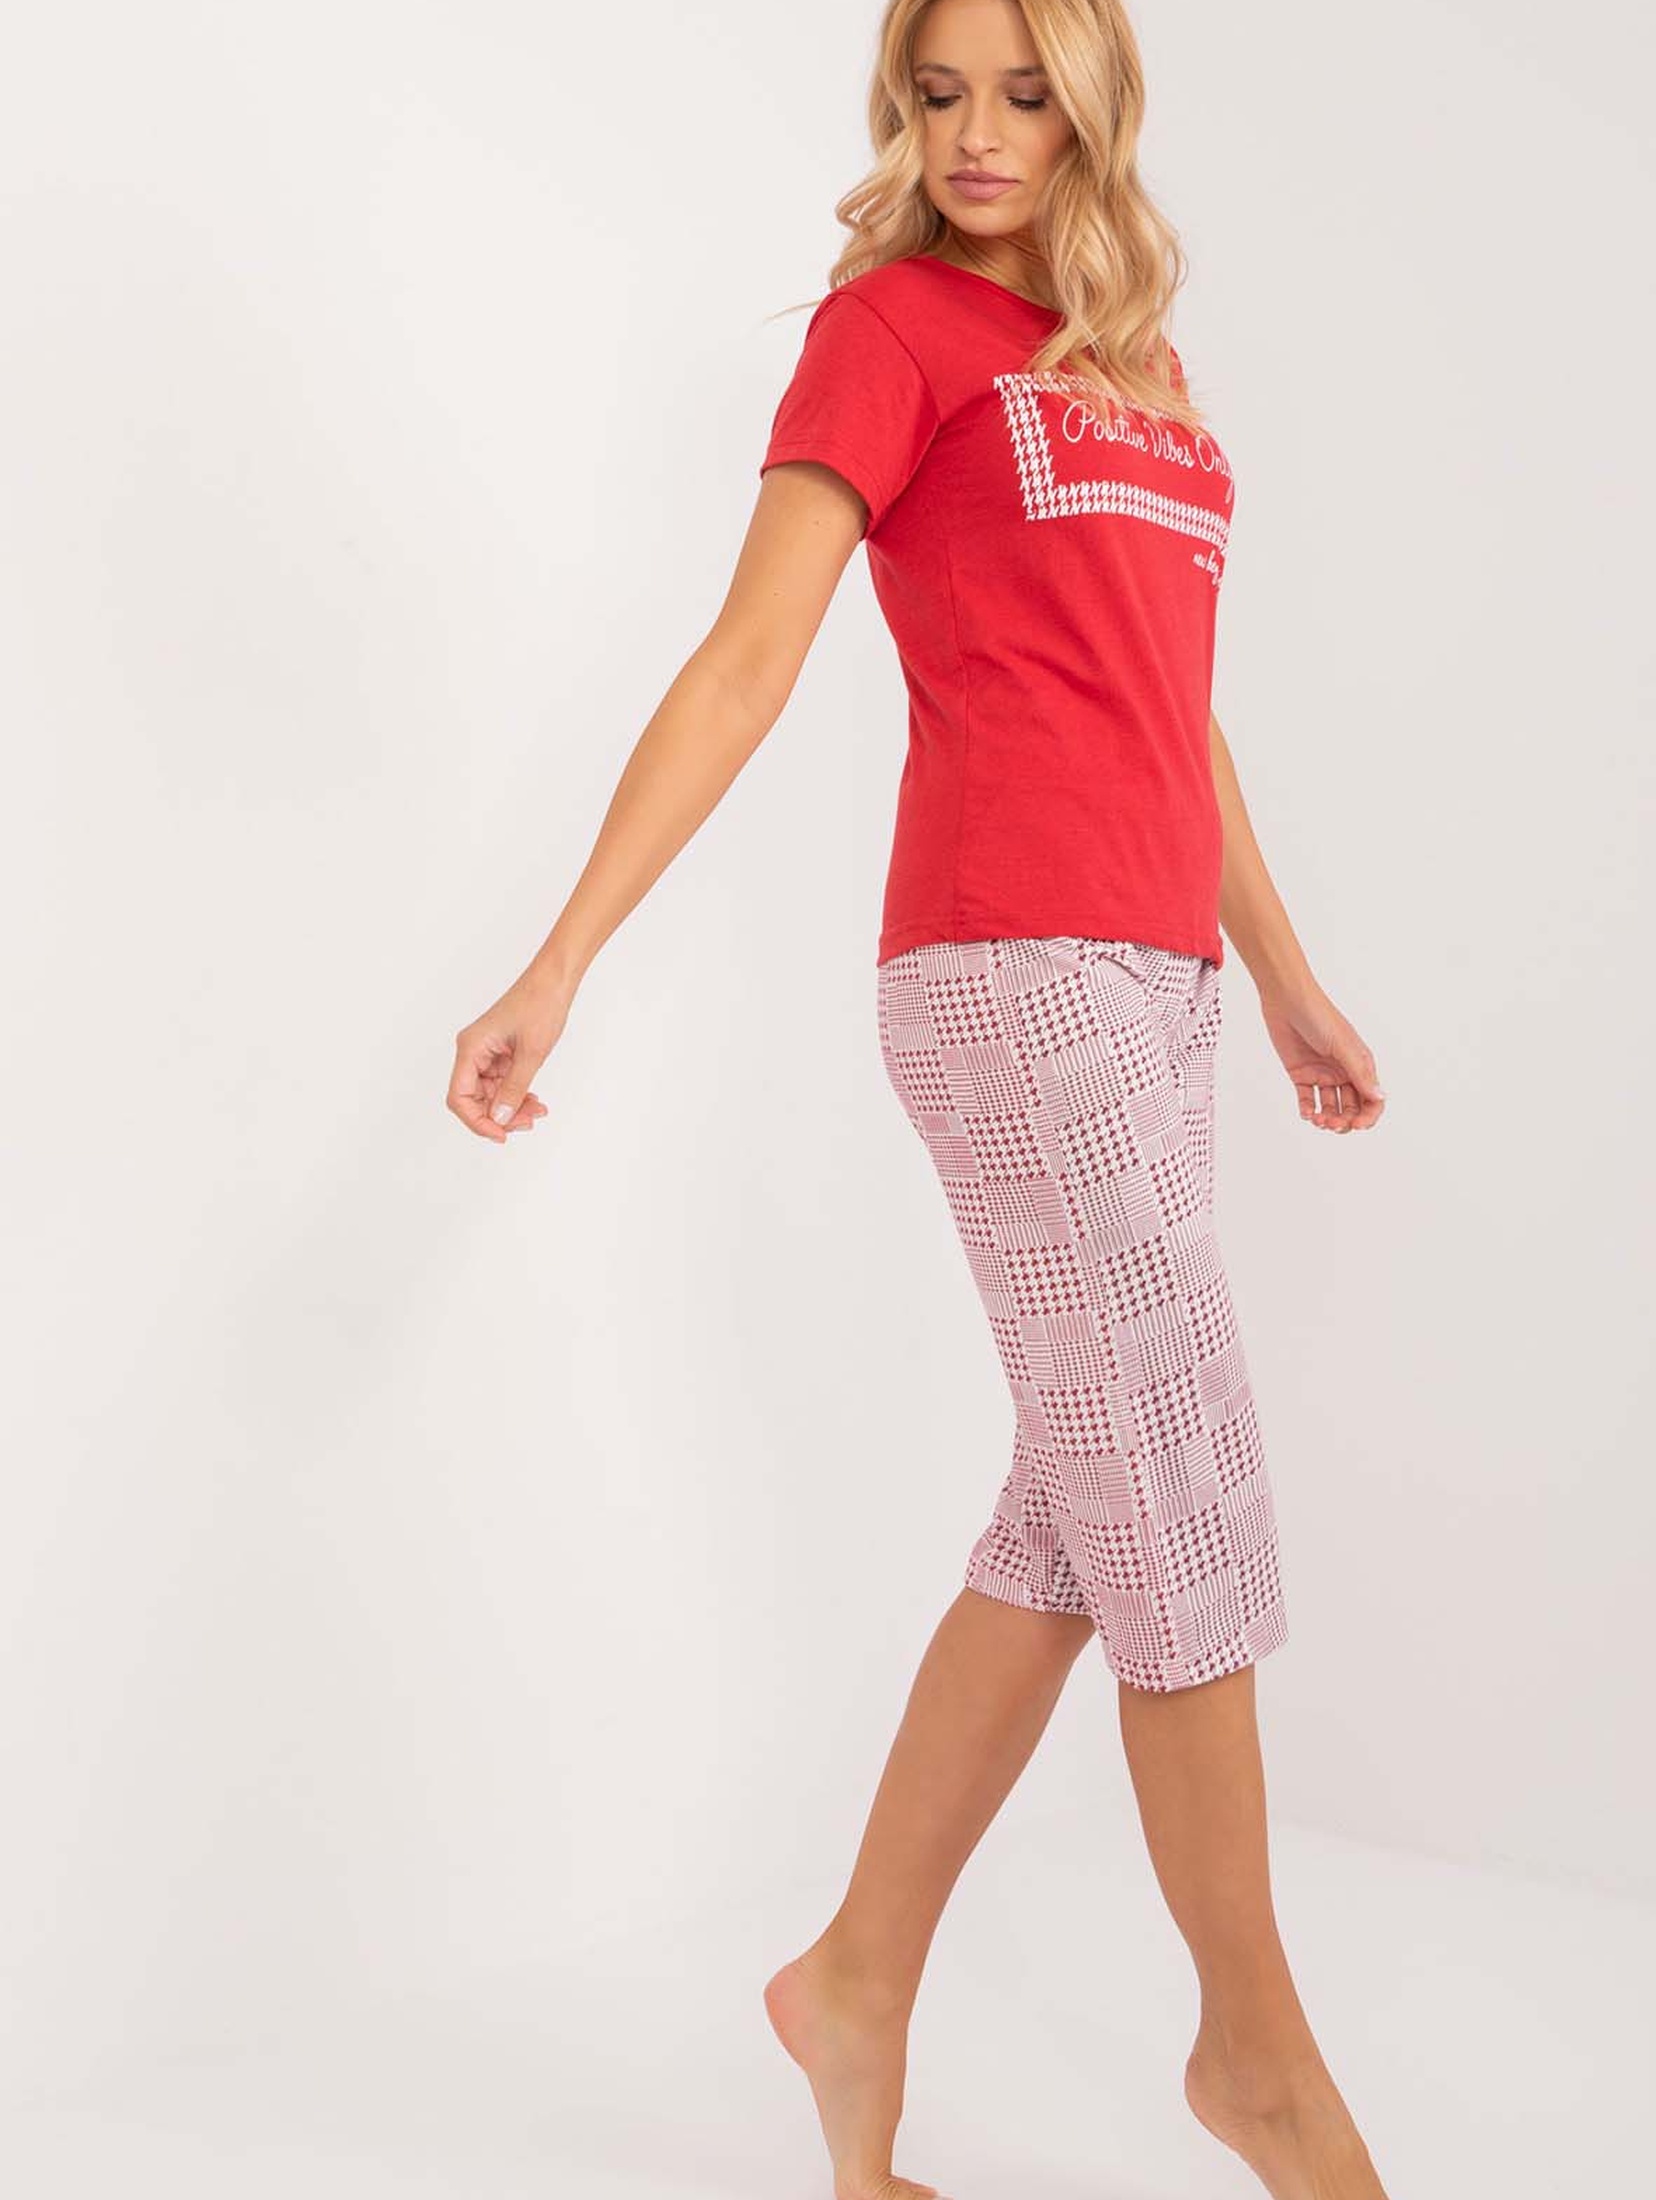 Damska czerwona piżama z bawełny z krótkim rękawem